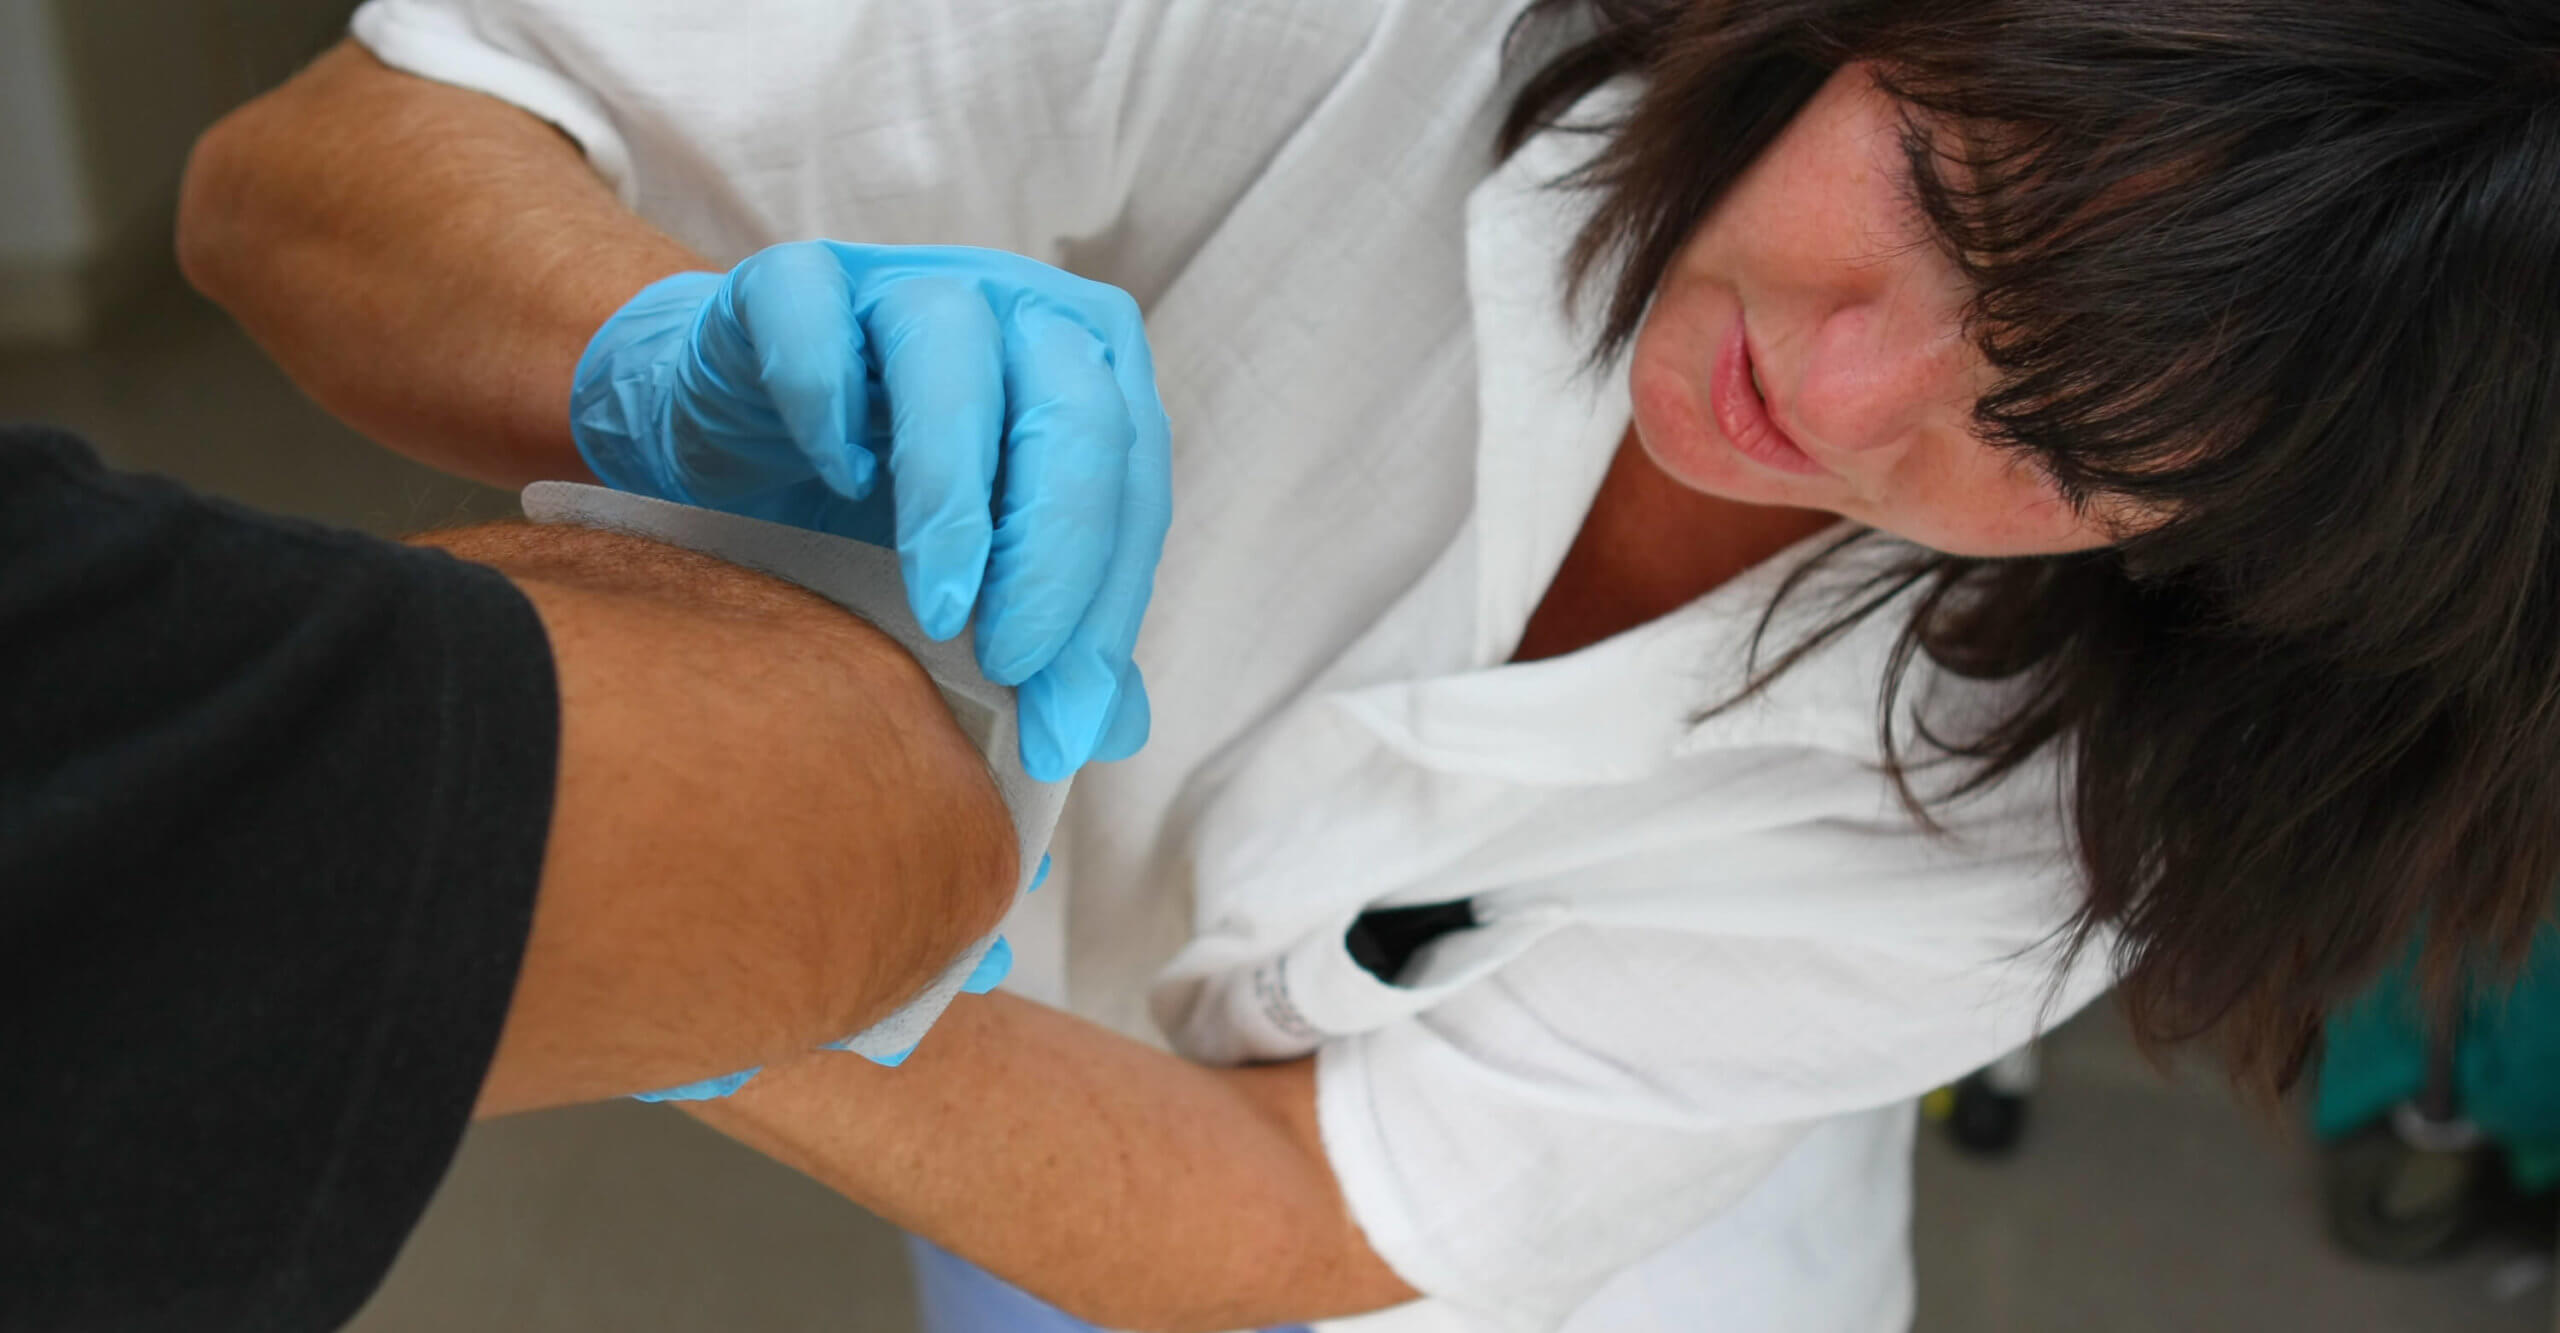 A nurse bandages a patient's knee wound.